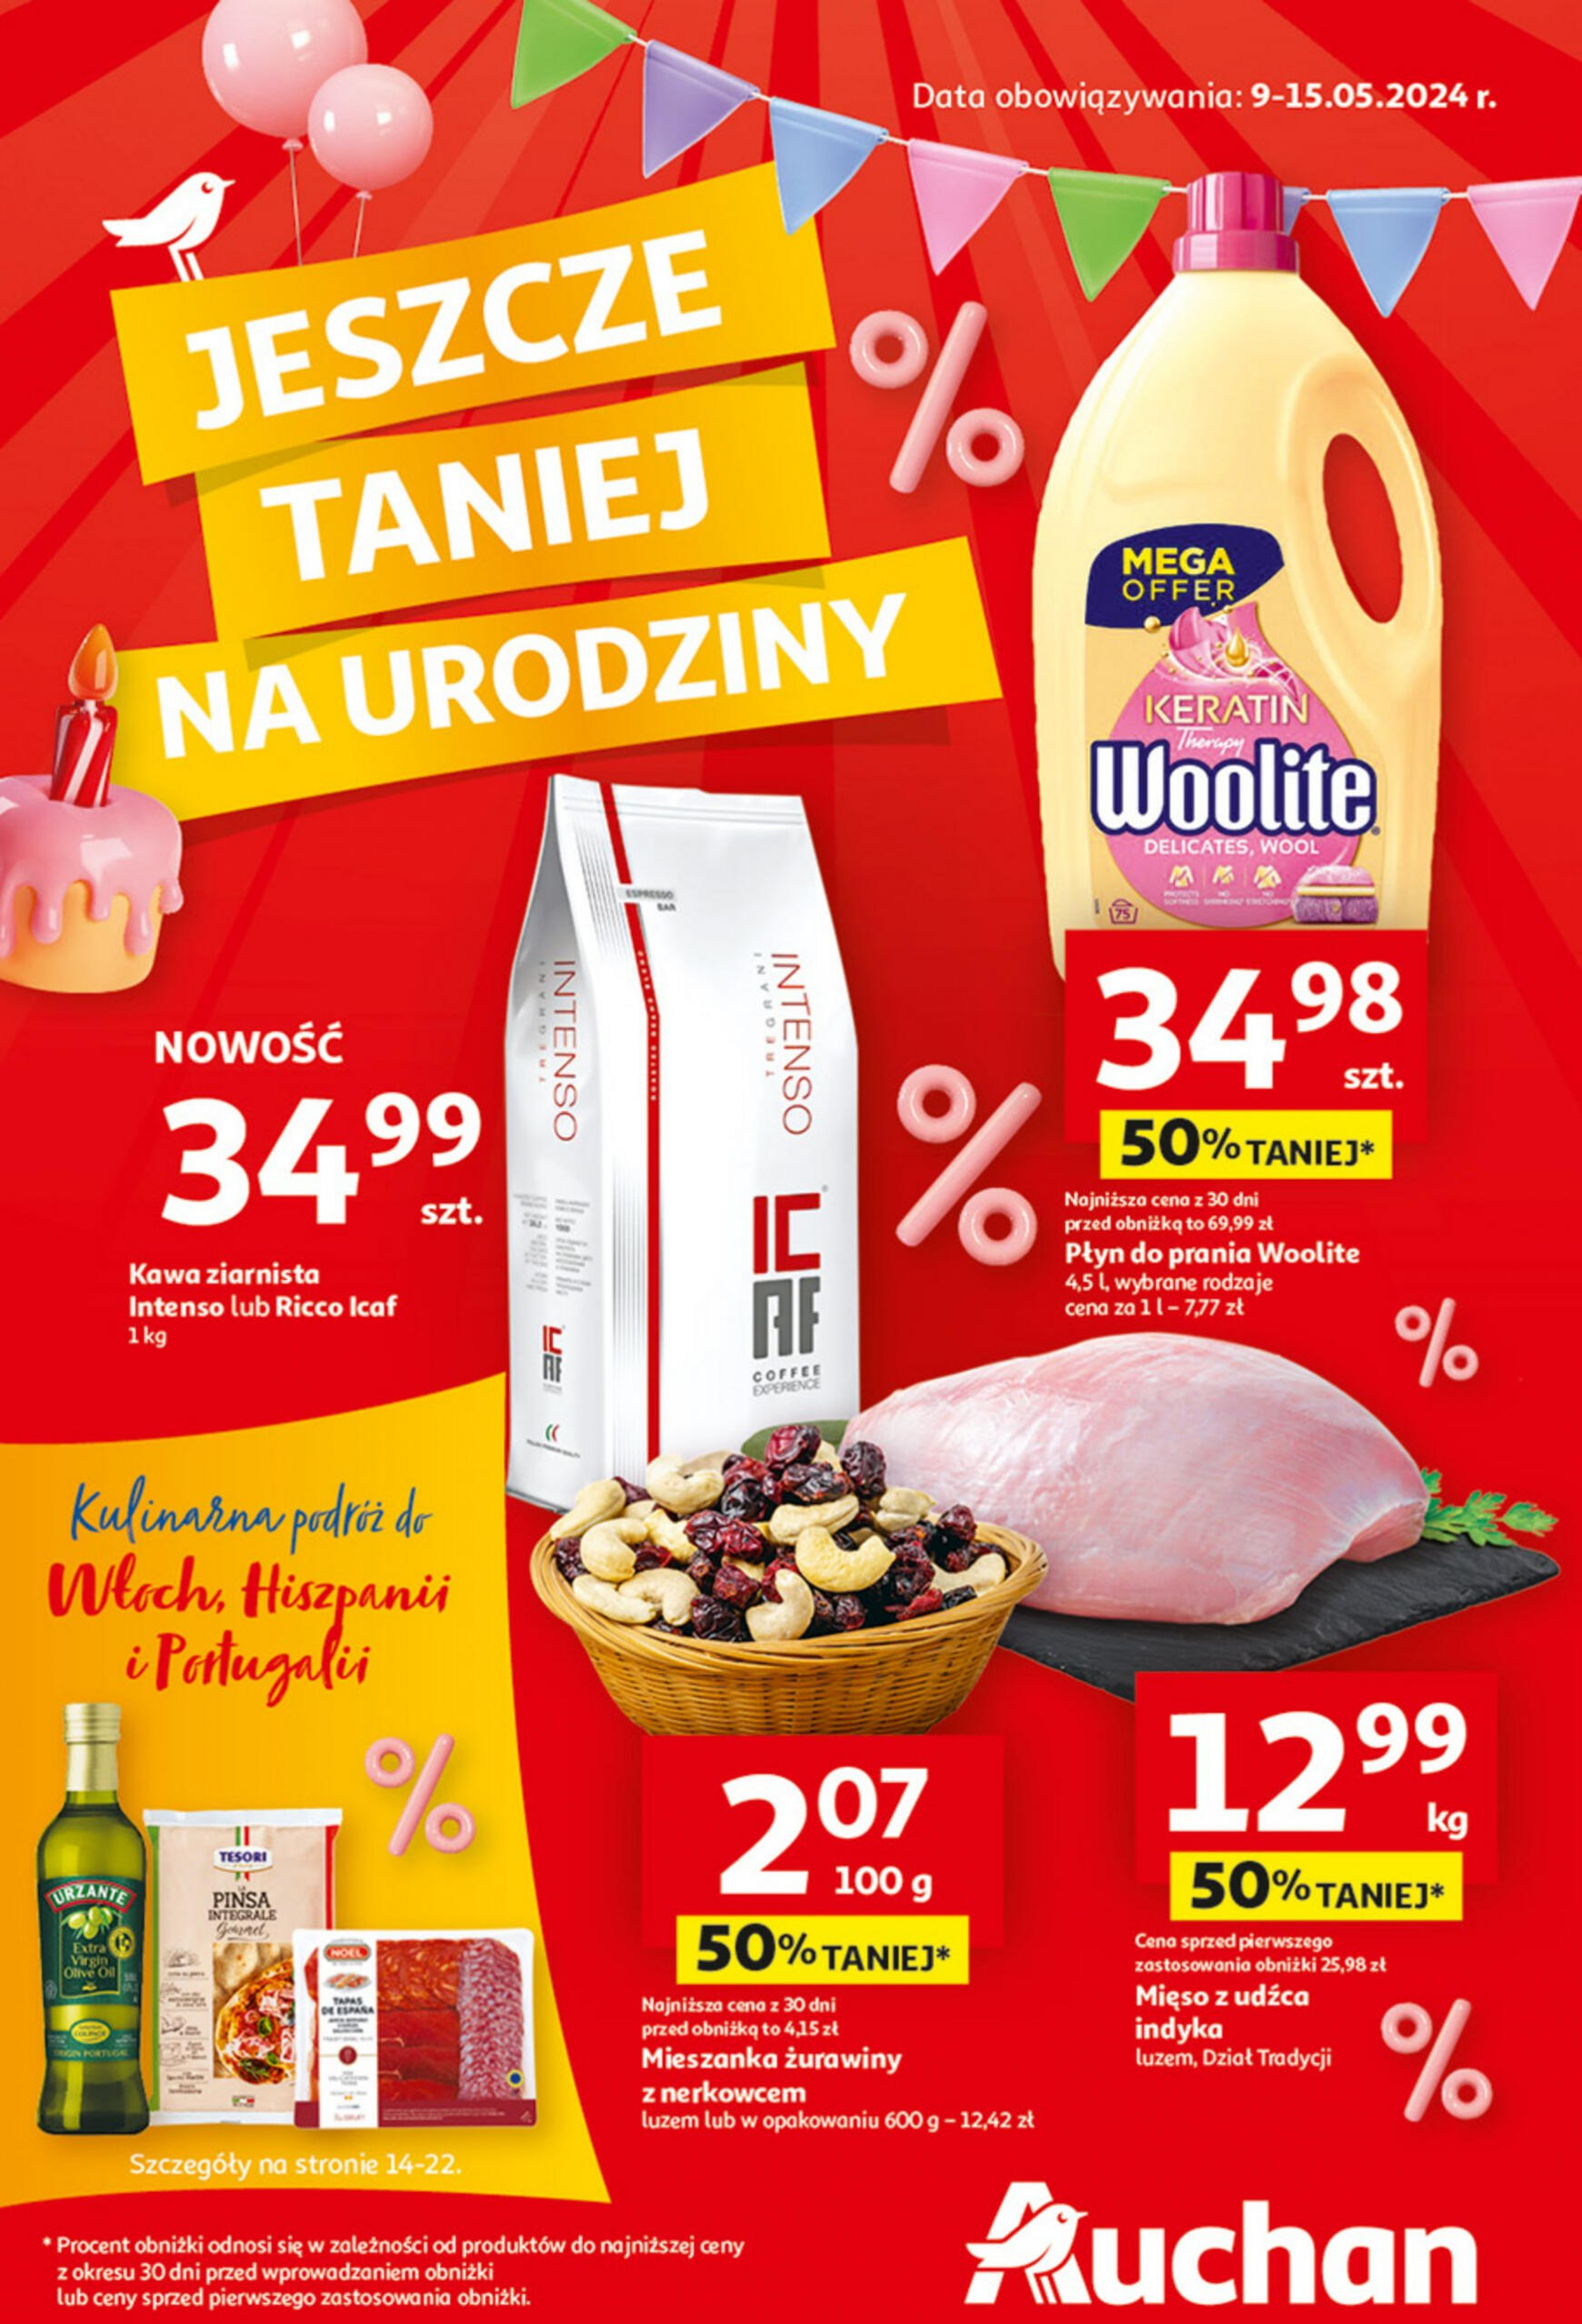 auchan - Hipermarket Auchan - Gazetka Jeszcze taniej na urodziny gazetka aktualna ważna od 09.05. - 15.05. - page: 1